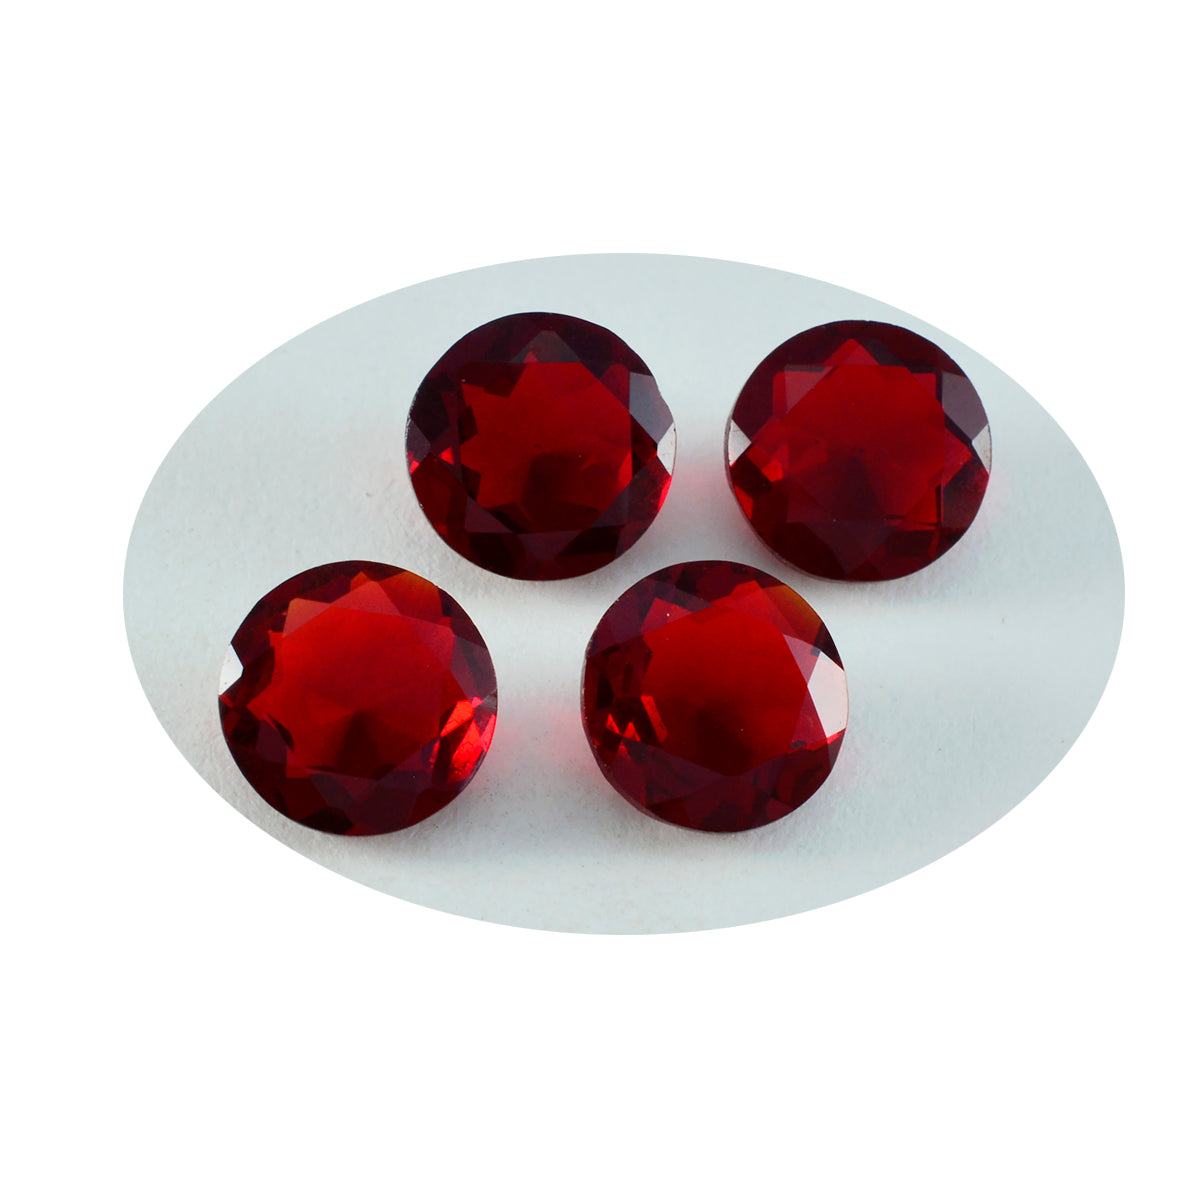 Riyogems 1 pièce rubis rouge cz à facettes 11x11mm forme ronde belles pierres précieuses de qualité